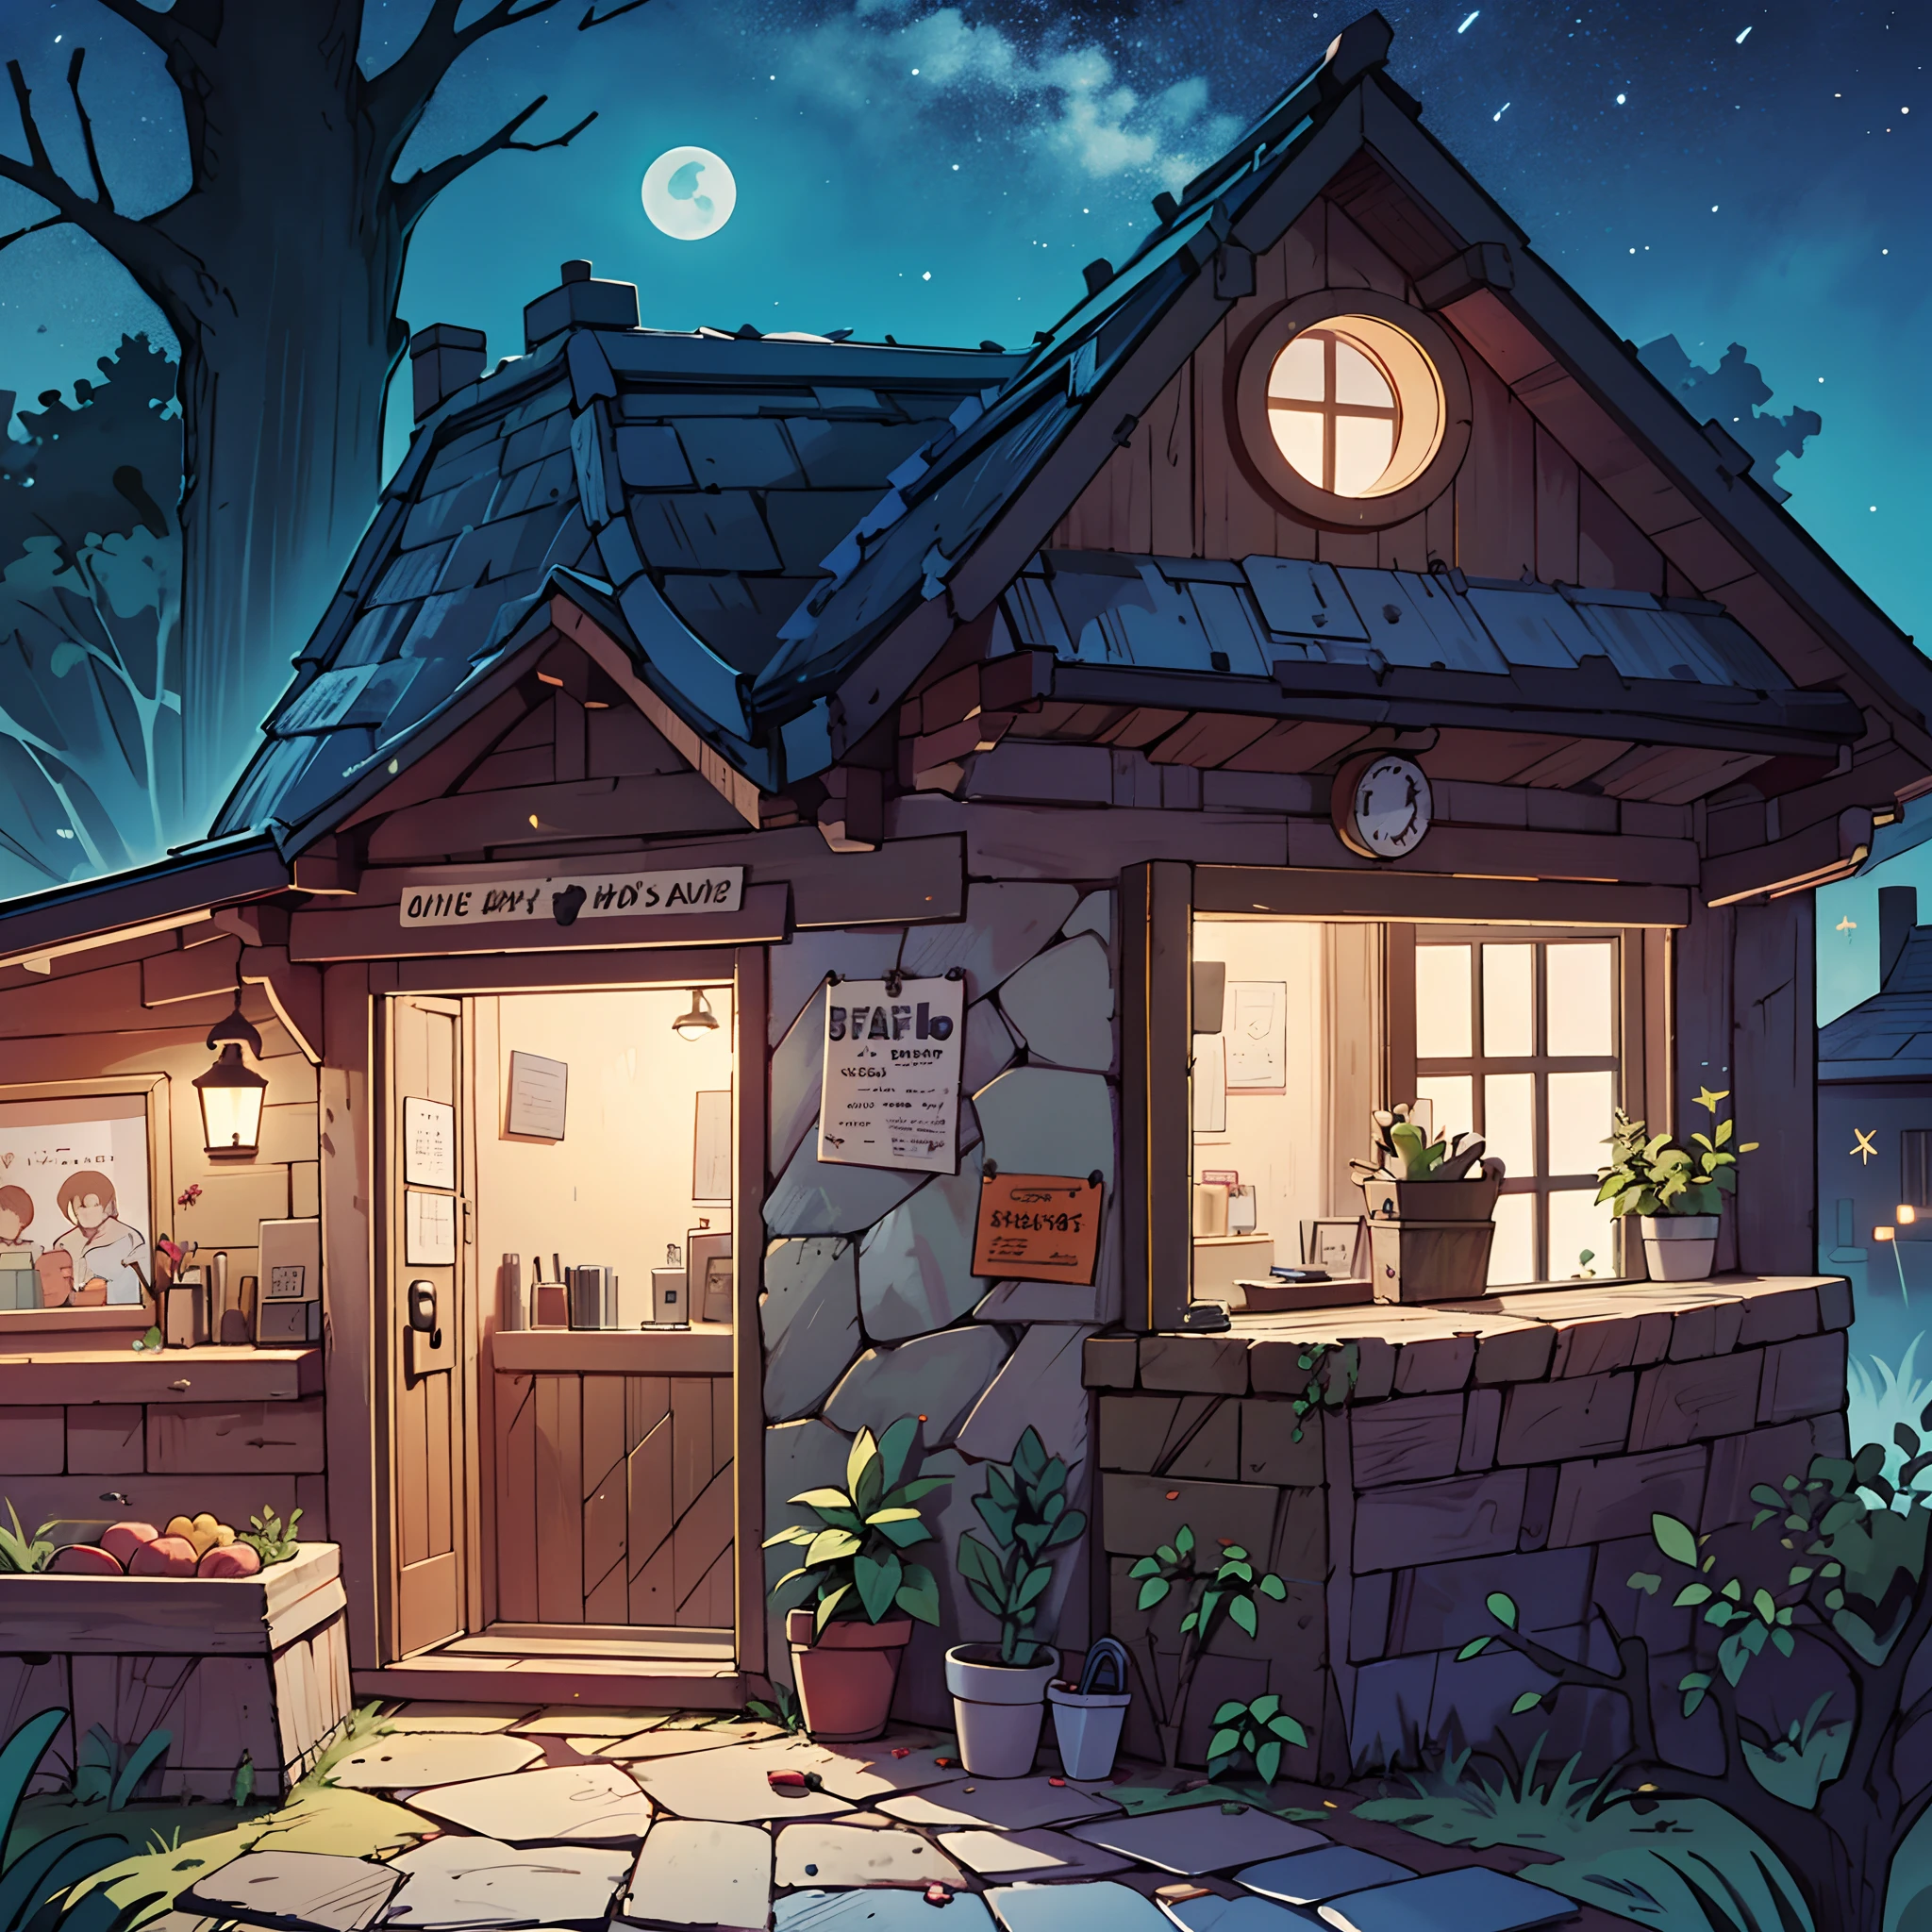 Nachtzeit, eine gemütlich aussehende Kabine. Ein Geschäft mit einer geheimnisvollen Tür. Anime-Hintergrund